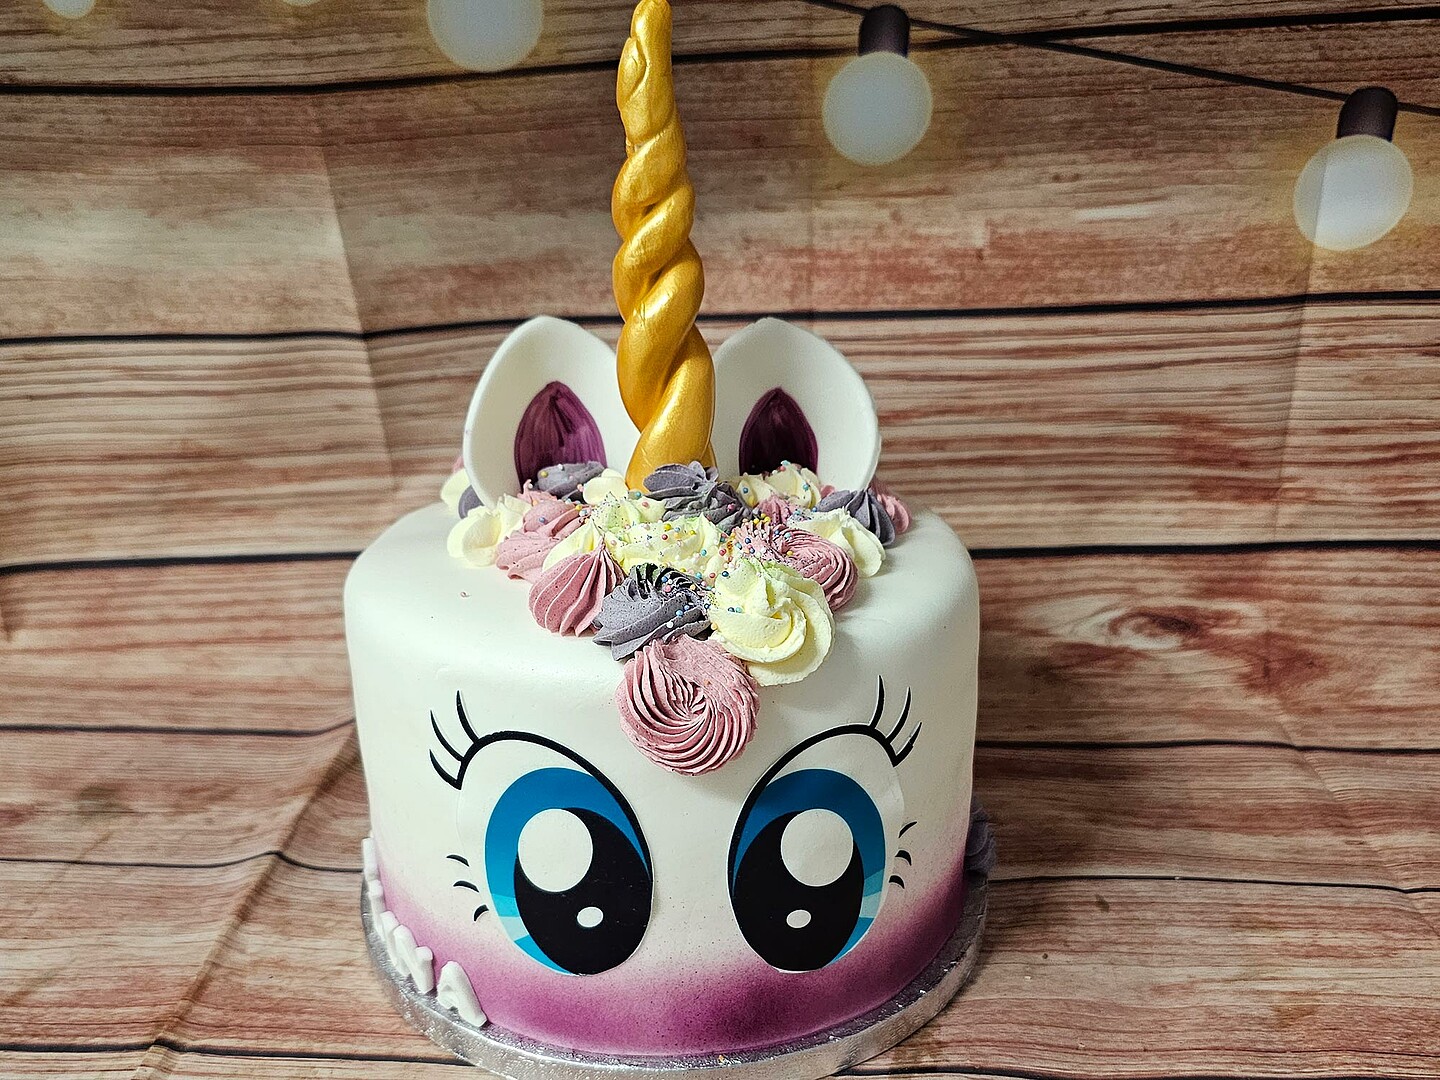 Eine Torte in Form eines Einhorns. Die Torte hat einen violett-weißen Farbverlauf, große blaue Augen und ein goldenes Horn.